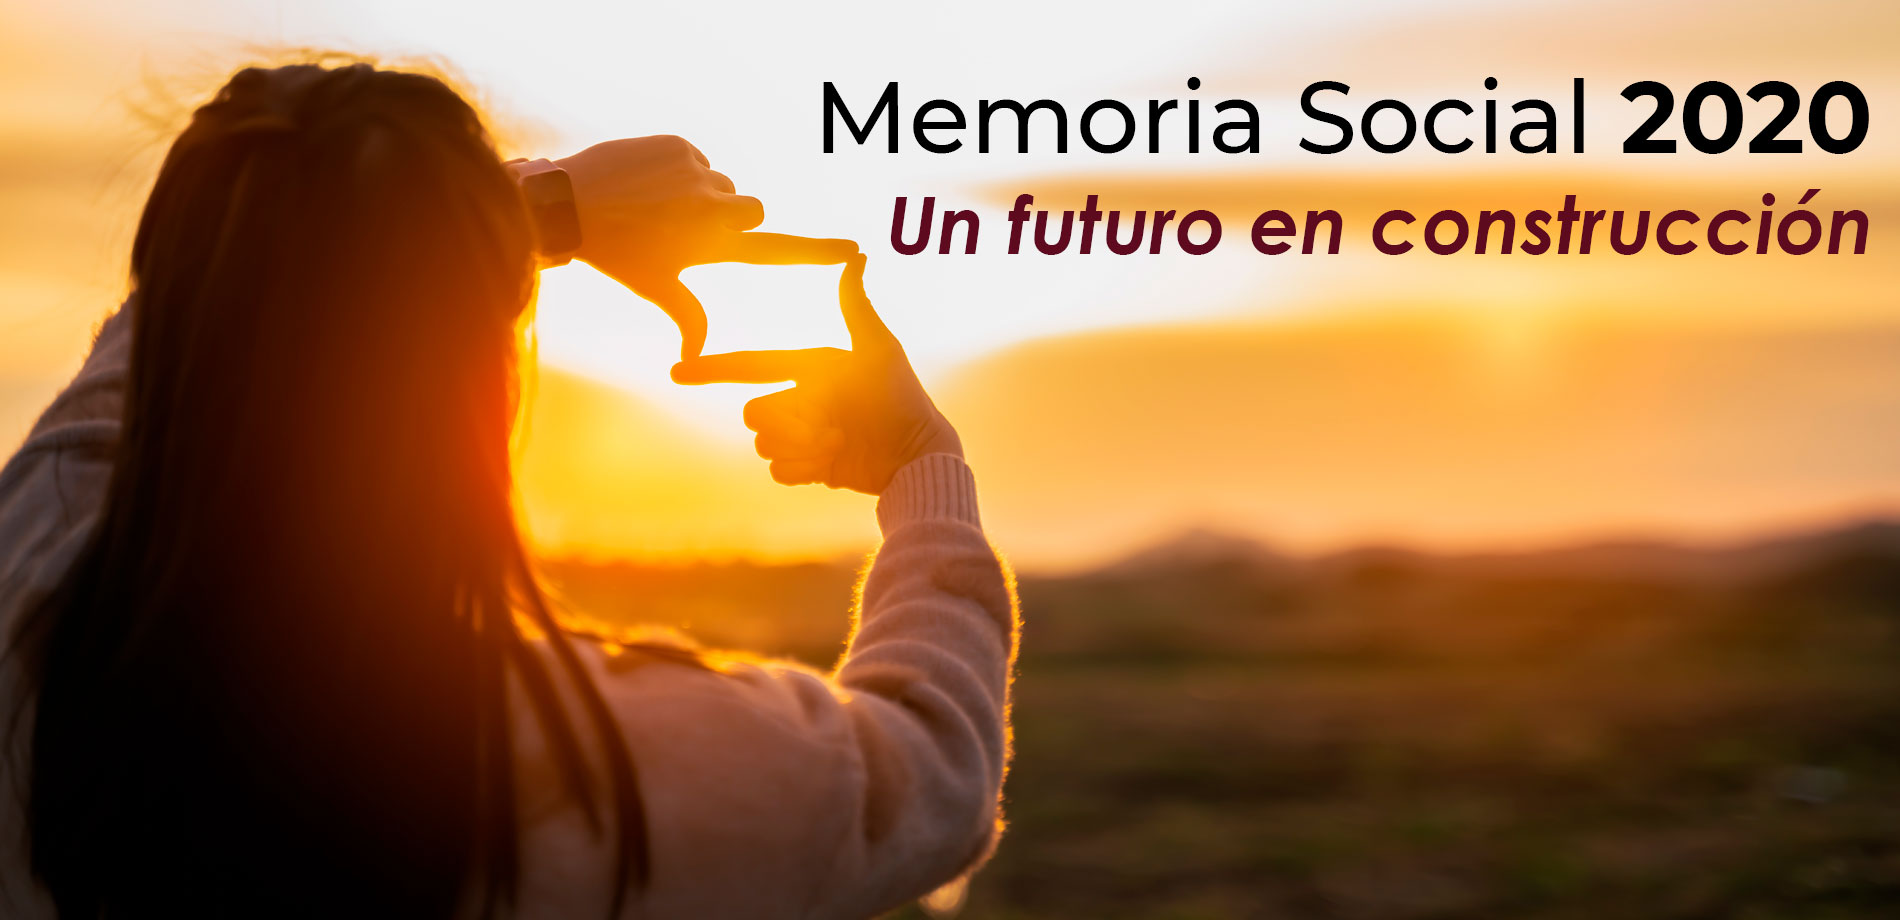 Memoria Social de Tomamos impulso - TRAGOBANK | AGRUPACIÓ | ATLANTIS